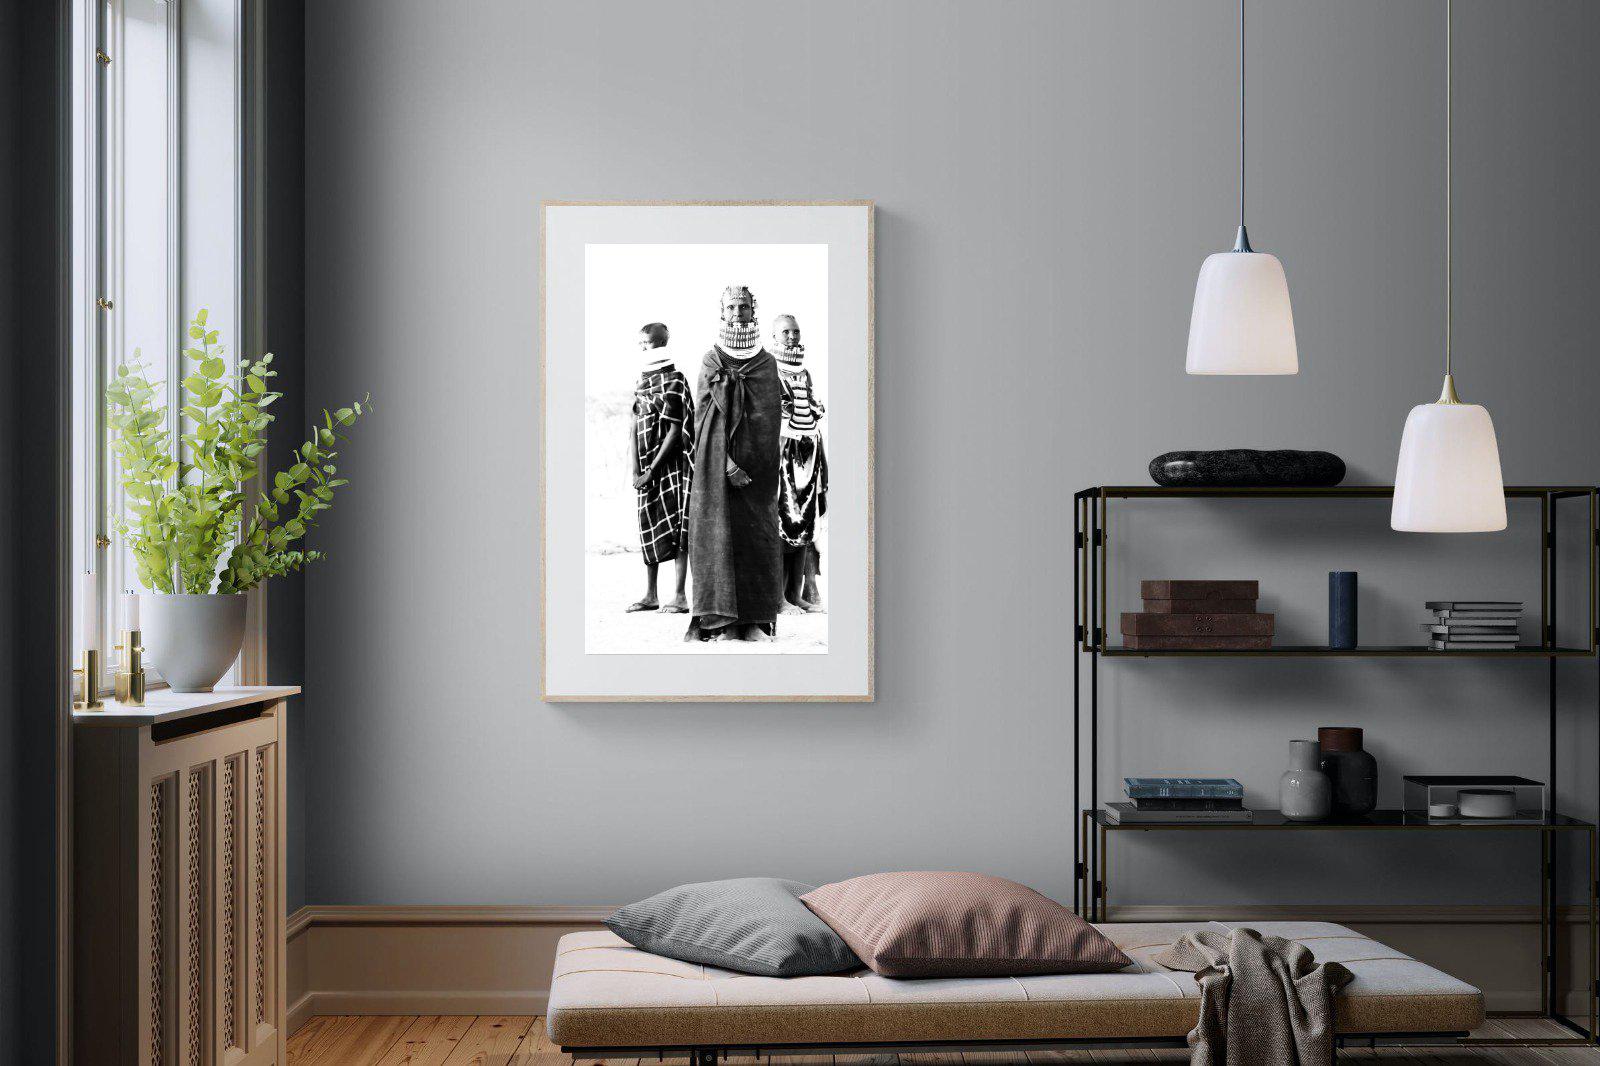 Turkana-Wall_Art-100 x 150cm-Framed Print-Wood-Pixalot